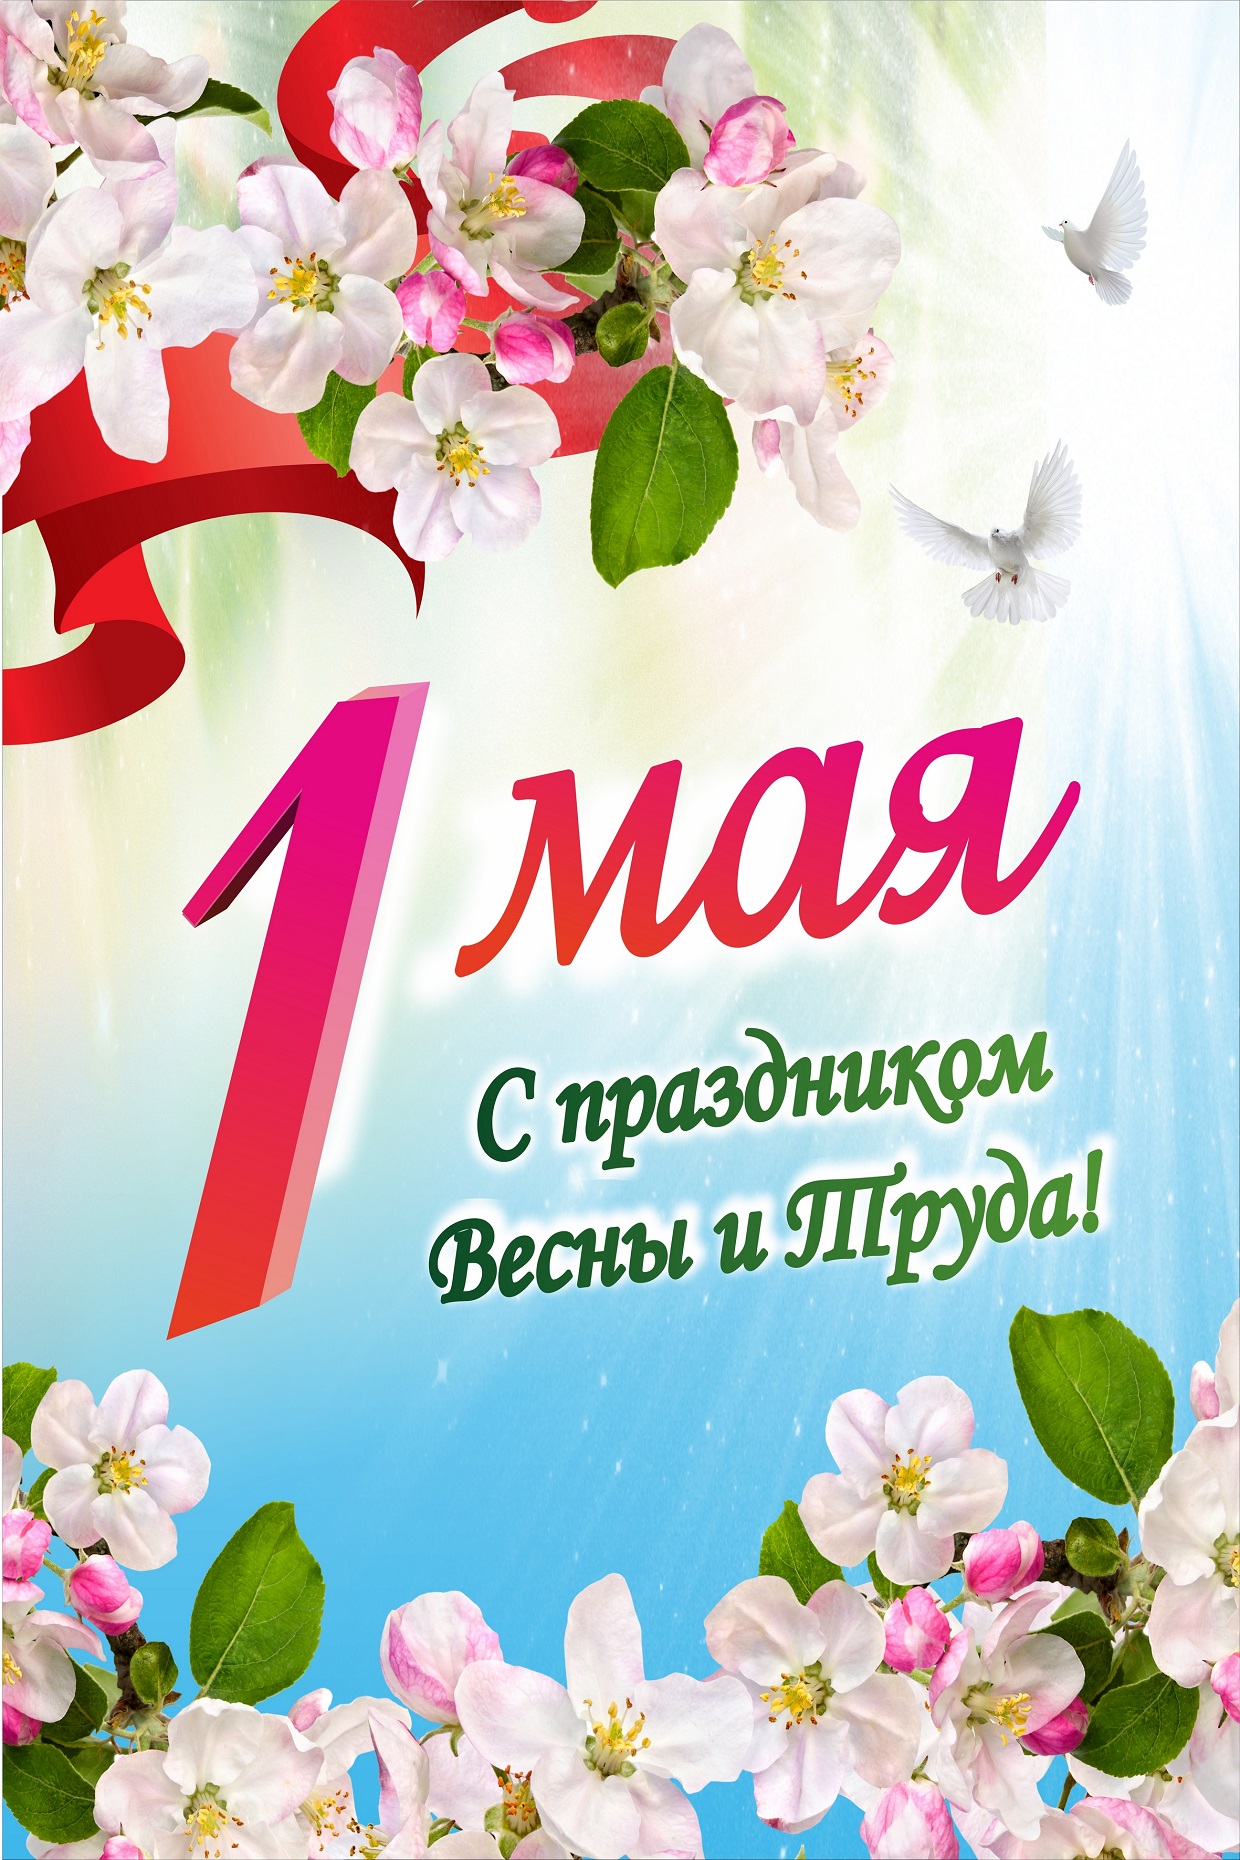 Картинку 1 мая праздник весны. 1 Мая праздник. 1 Майя. С 1 маем. С праздником первого мая.